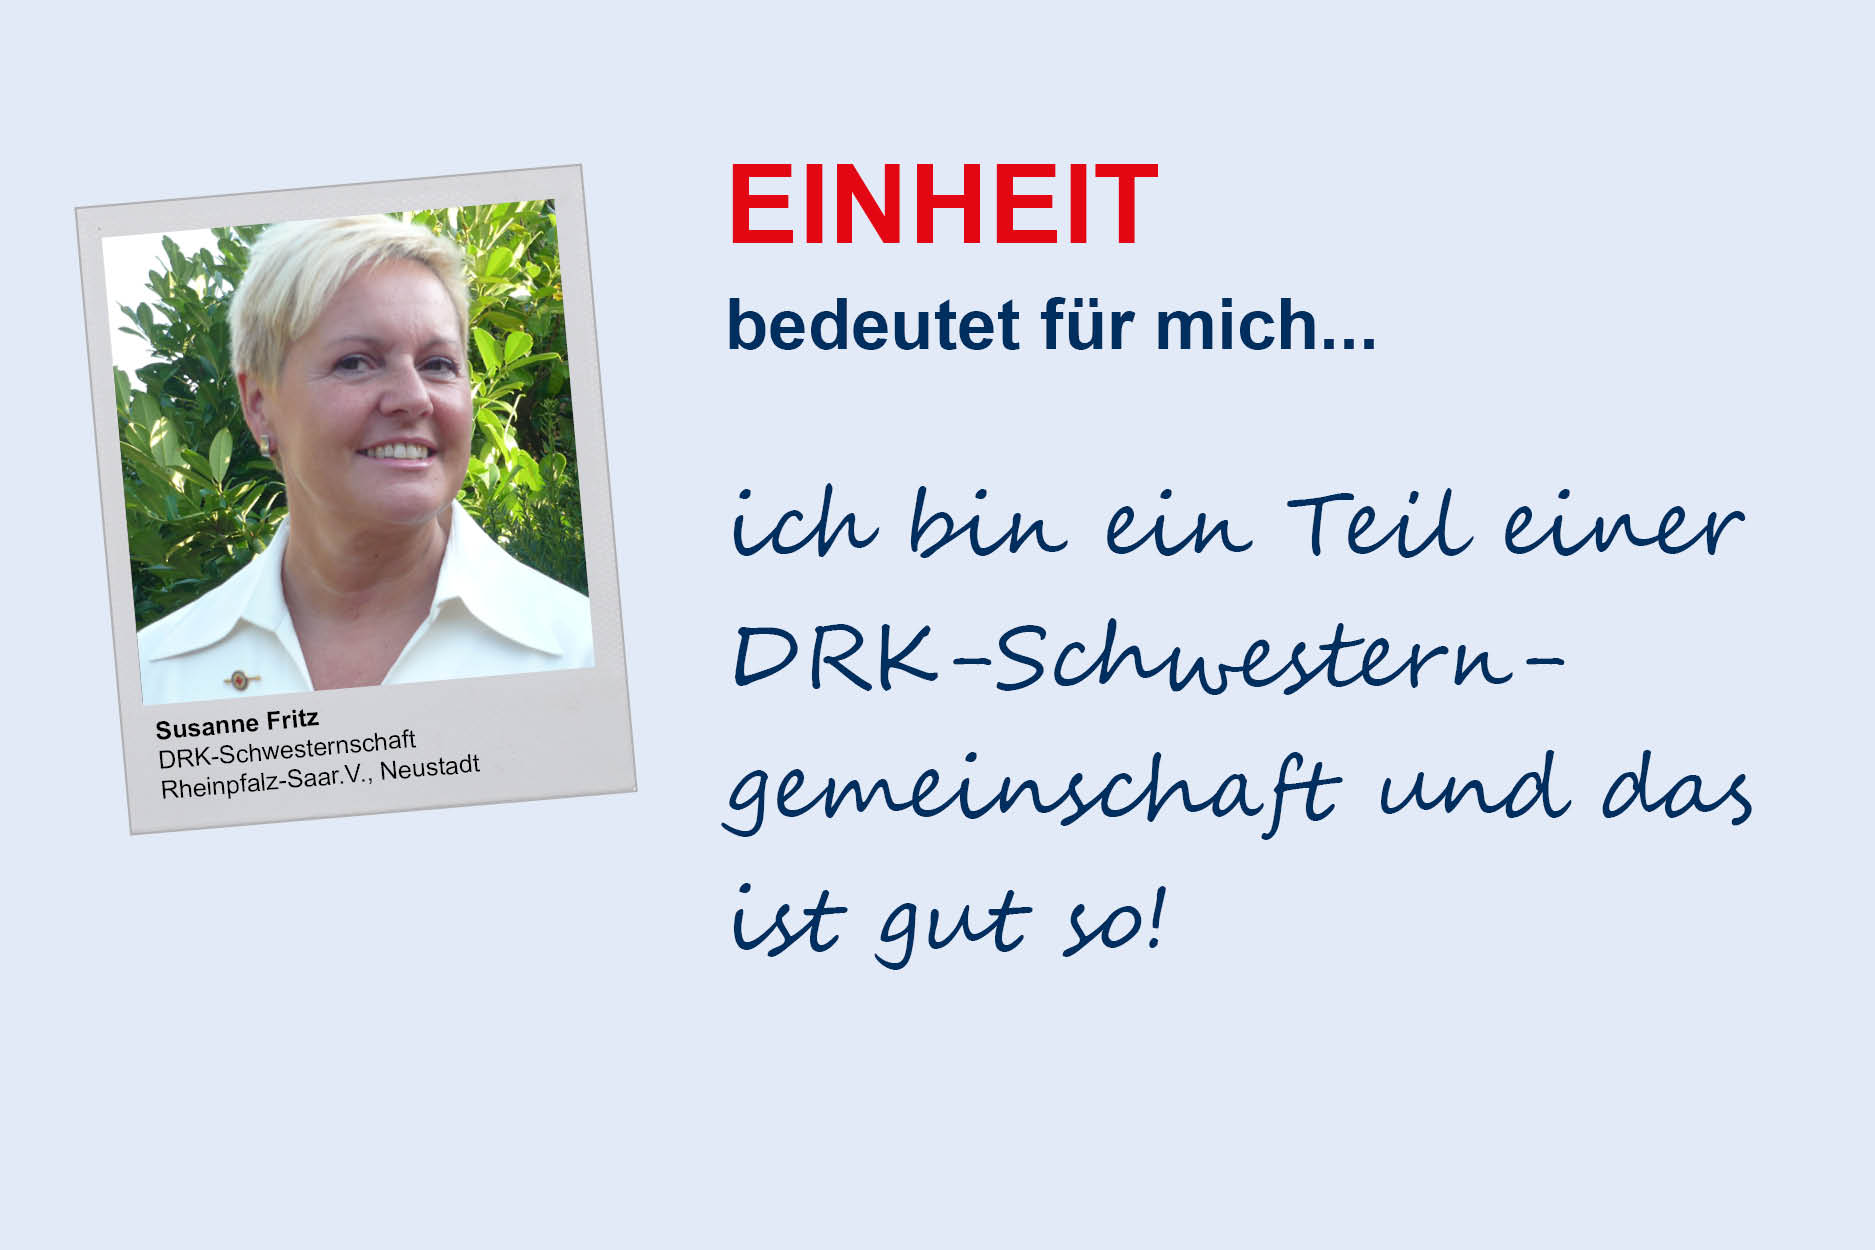 Susanne Fritz, DRK-Schwesternschaft Rheinpfalz-Saar e.V./Neustadt
**Einheit**